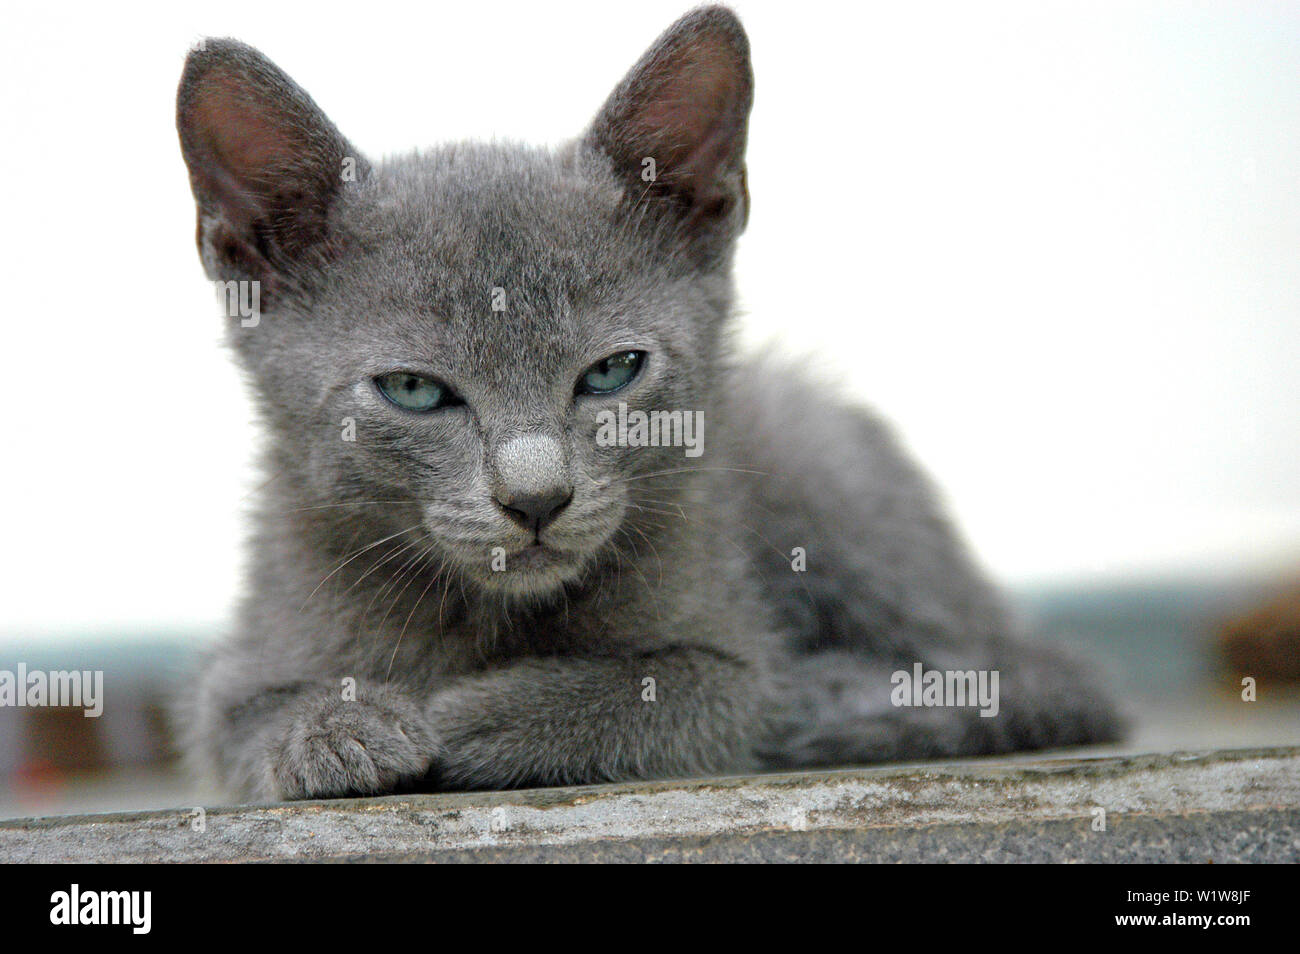 Lindo gatito con ojos azules y piel gris sentado y viendo (Mirando) a la cámara (Pet Puppy Cat). Foto de stock